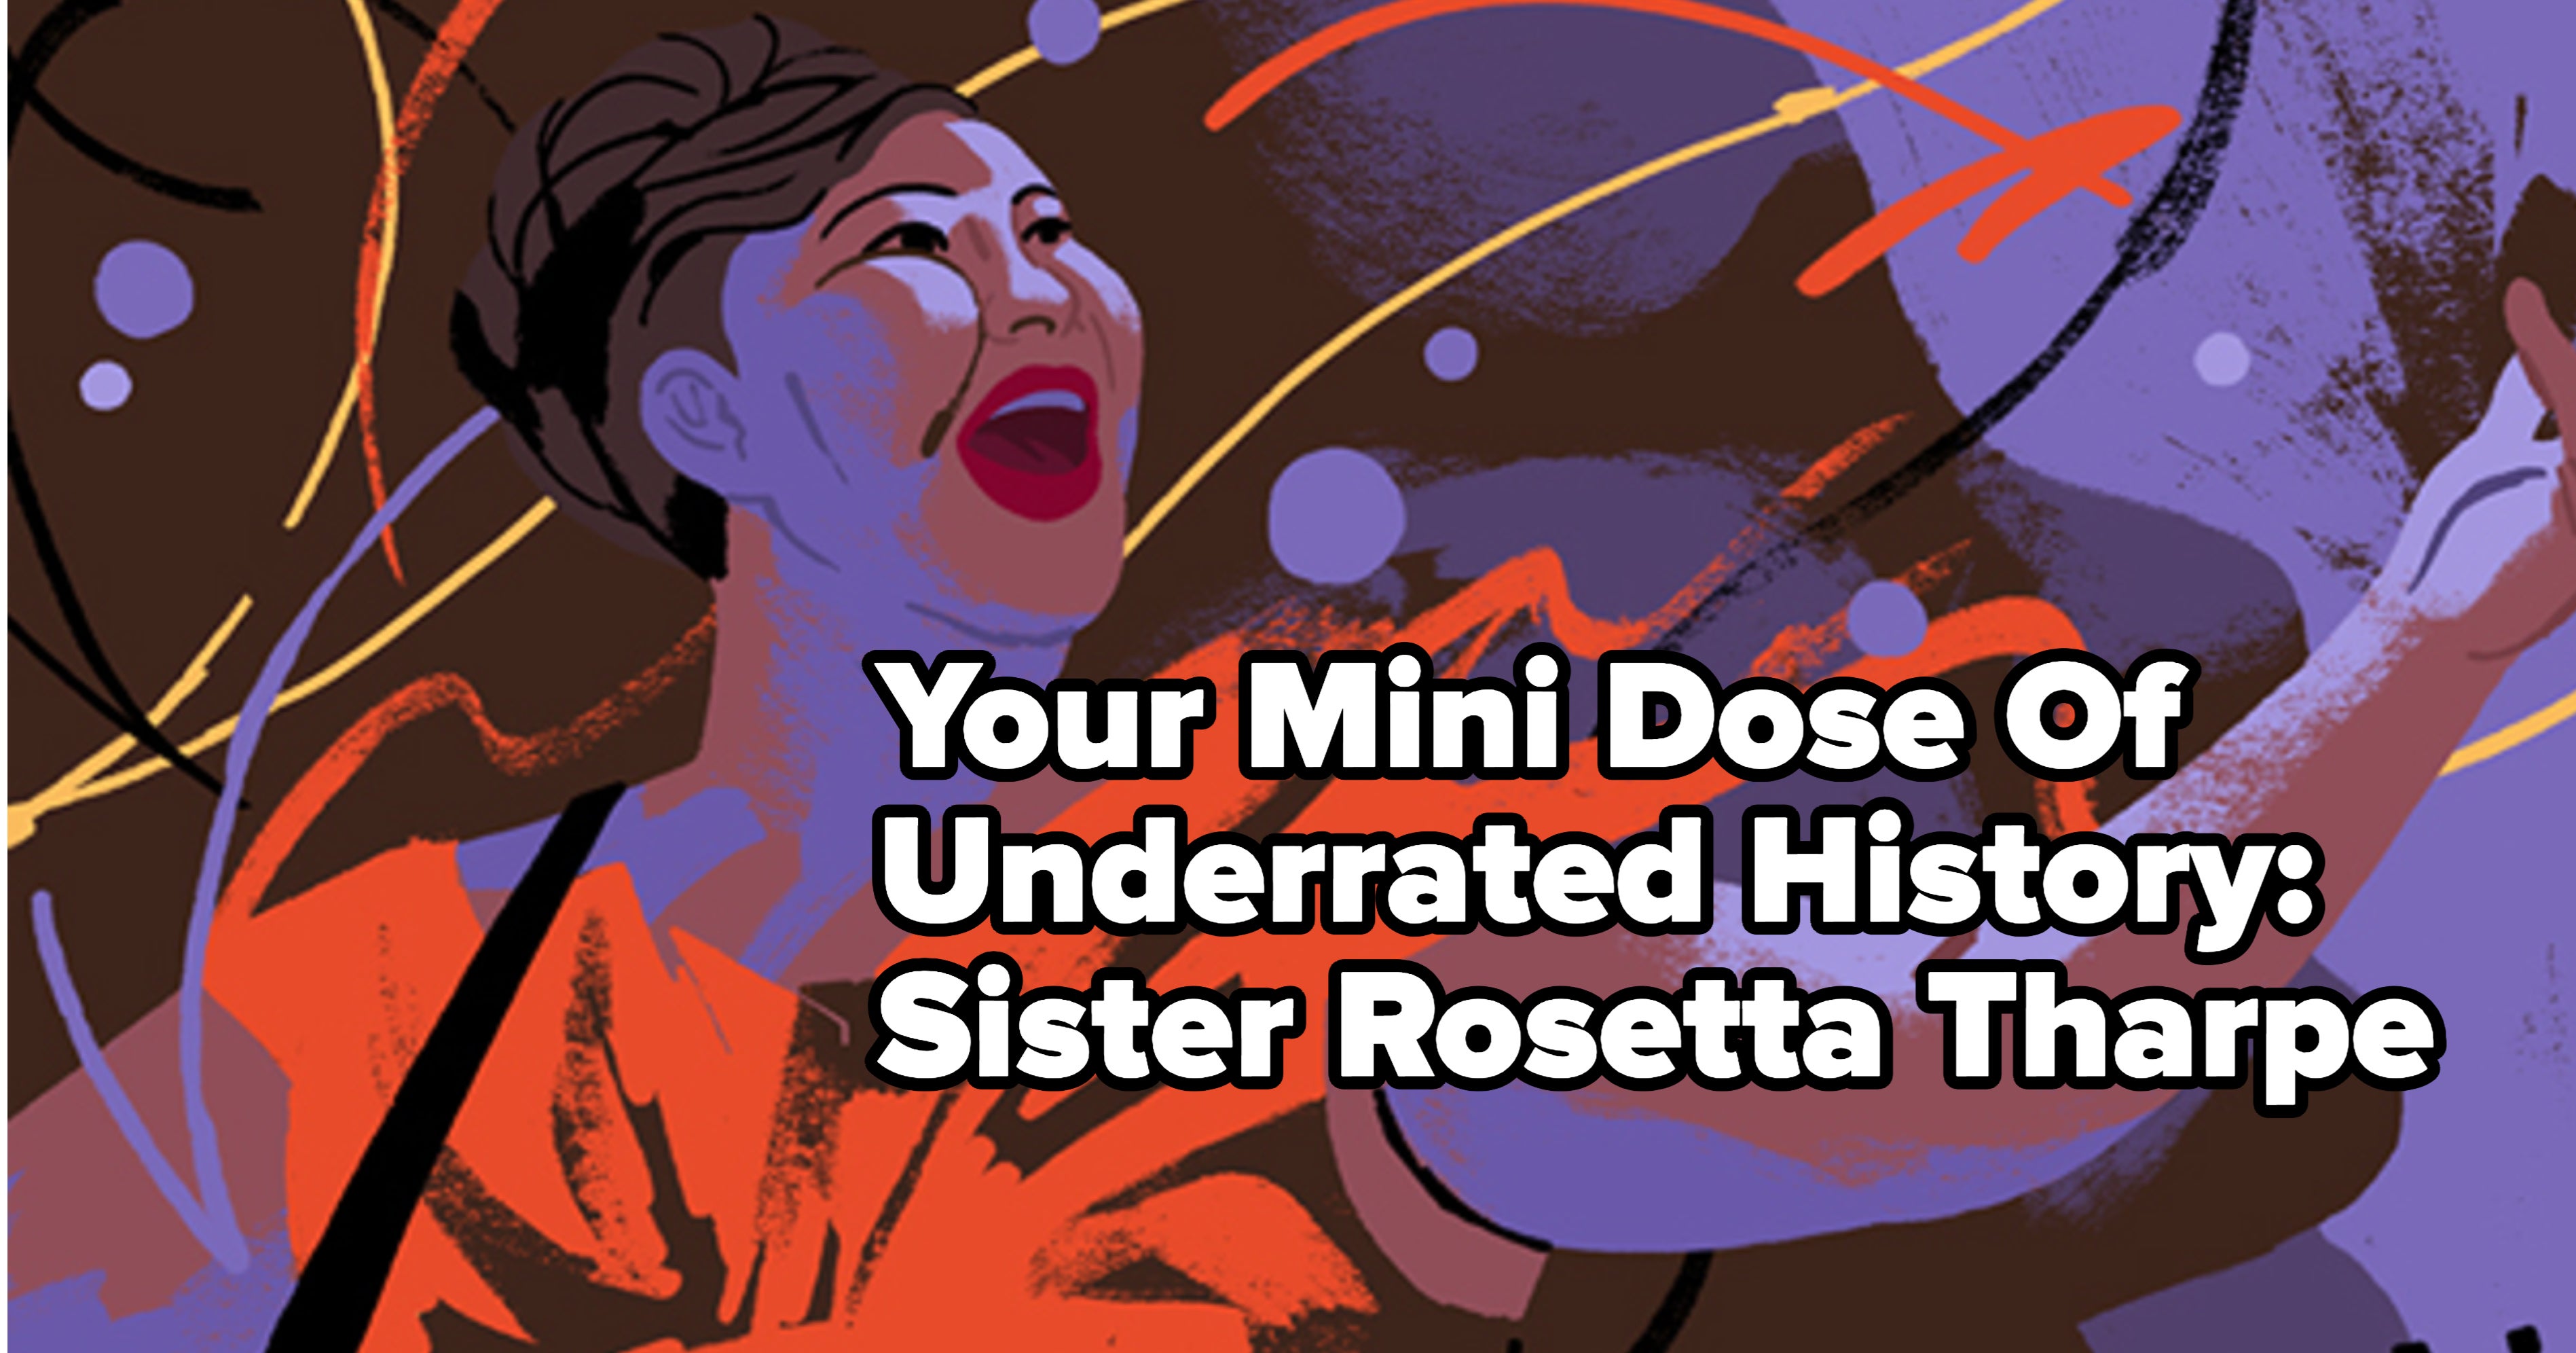 Forebears: Sister Rosetta Tharpe, The Godmother Of Rock 'N' Roll : NPR